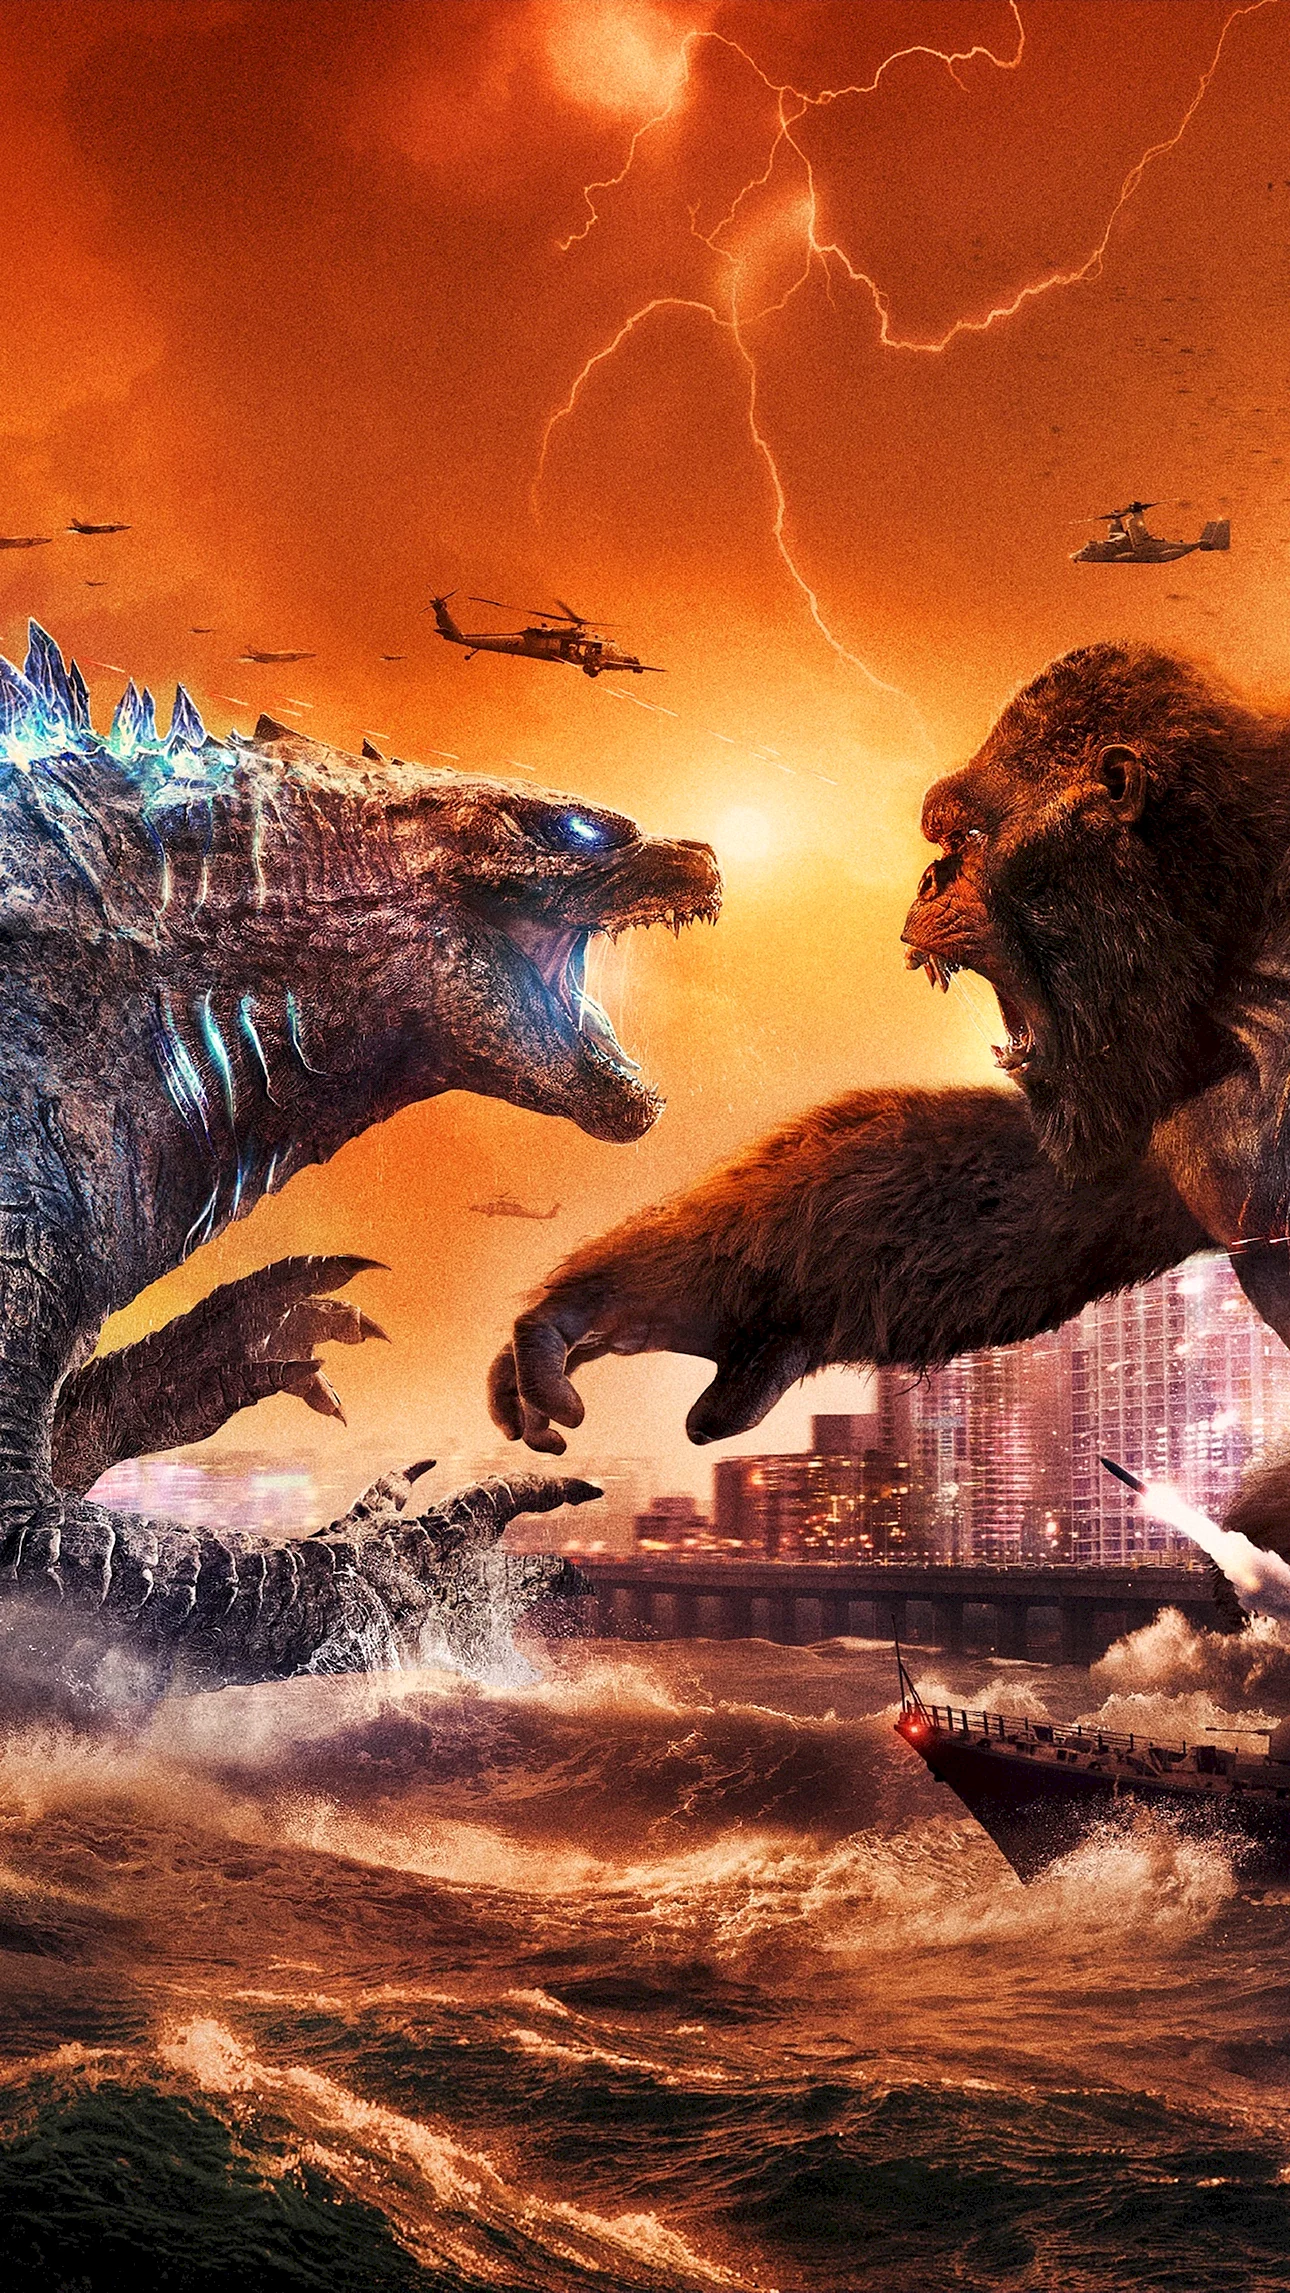 Godzilla Vs King Kong Wallpaper For iPhone